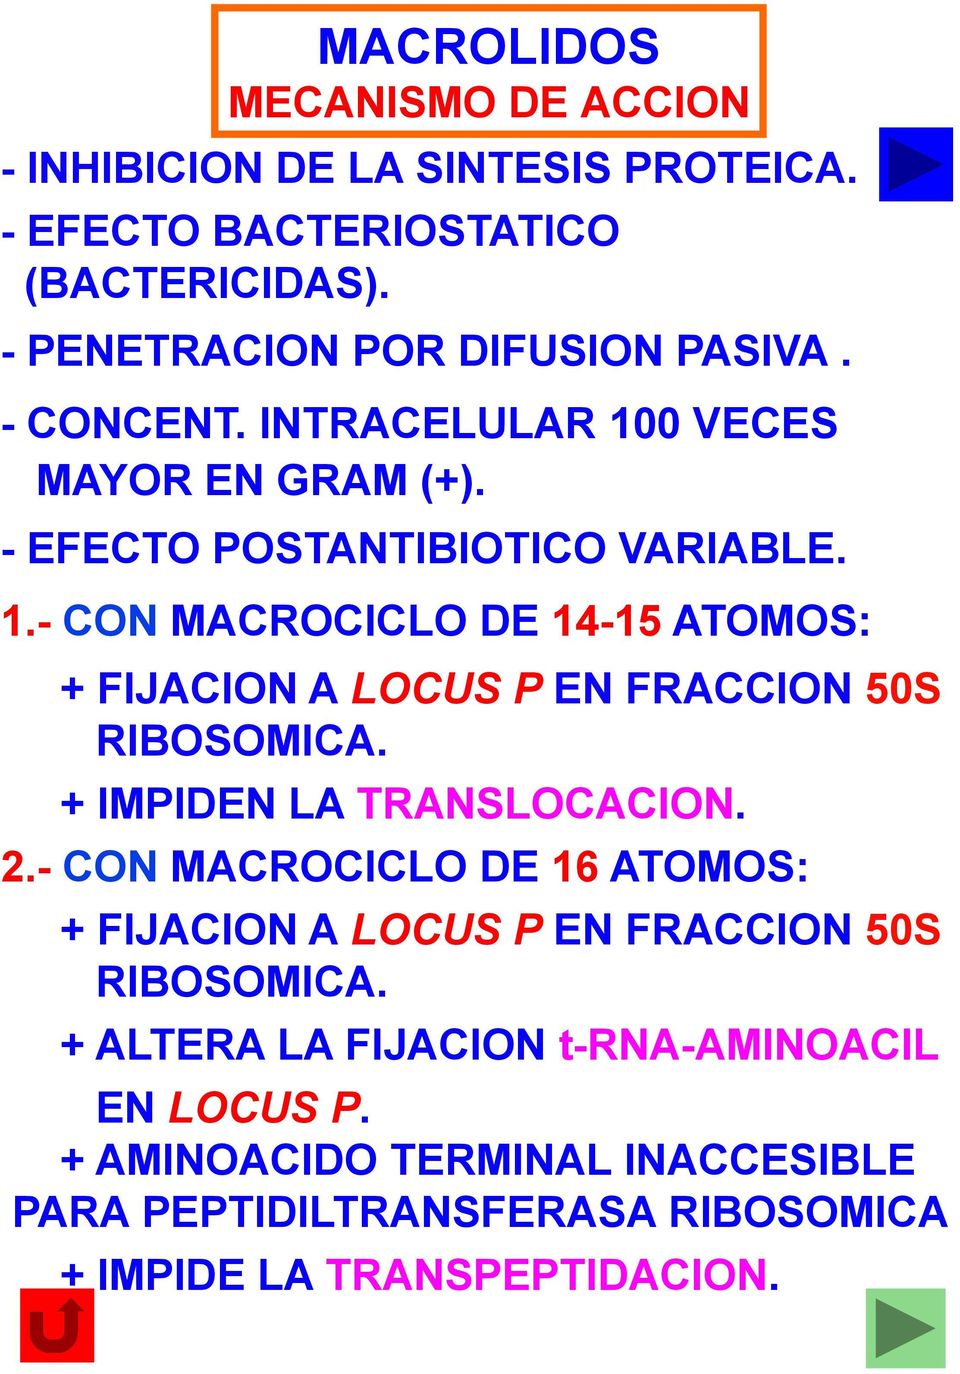 + IMPIDEN LA TRANSLOCACION. 2.- CON MACROCICLO DE 16 ATOMOS: + FIJACION A LOCUS P EN FRACCION 50S RIBOSOMICA.